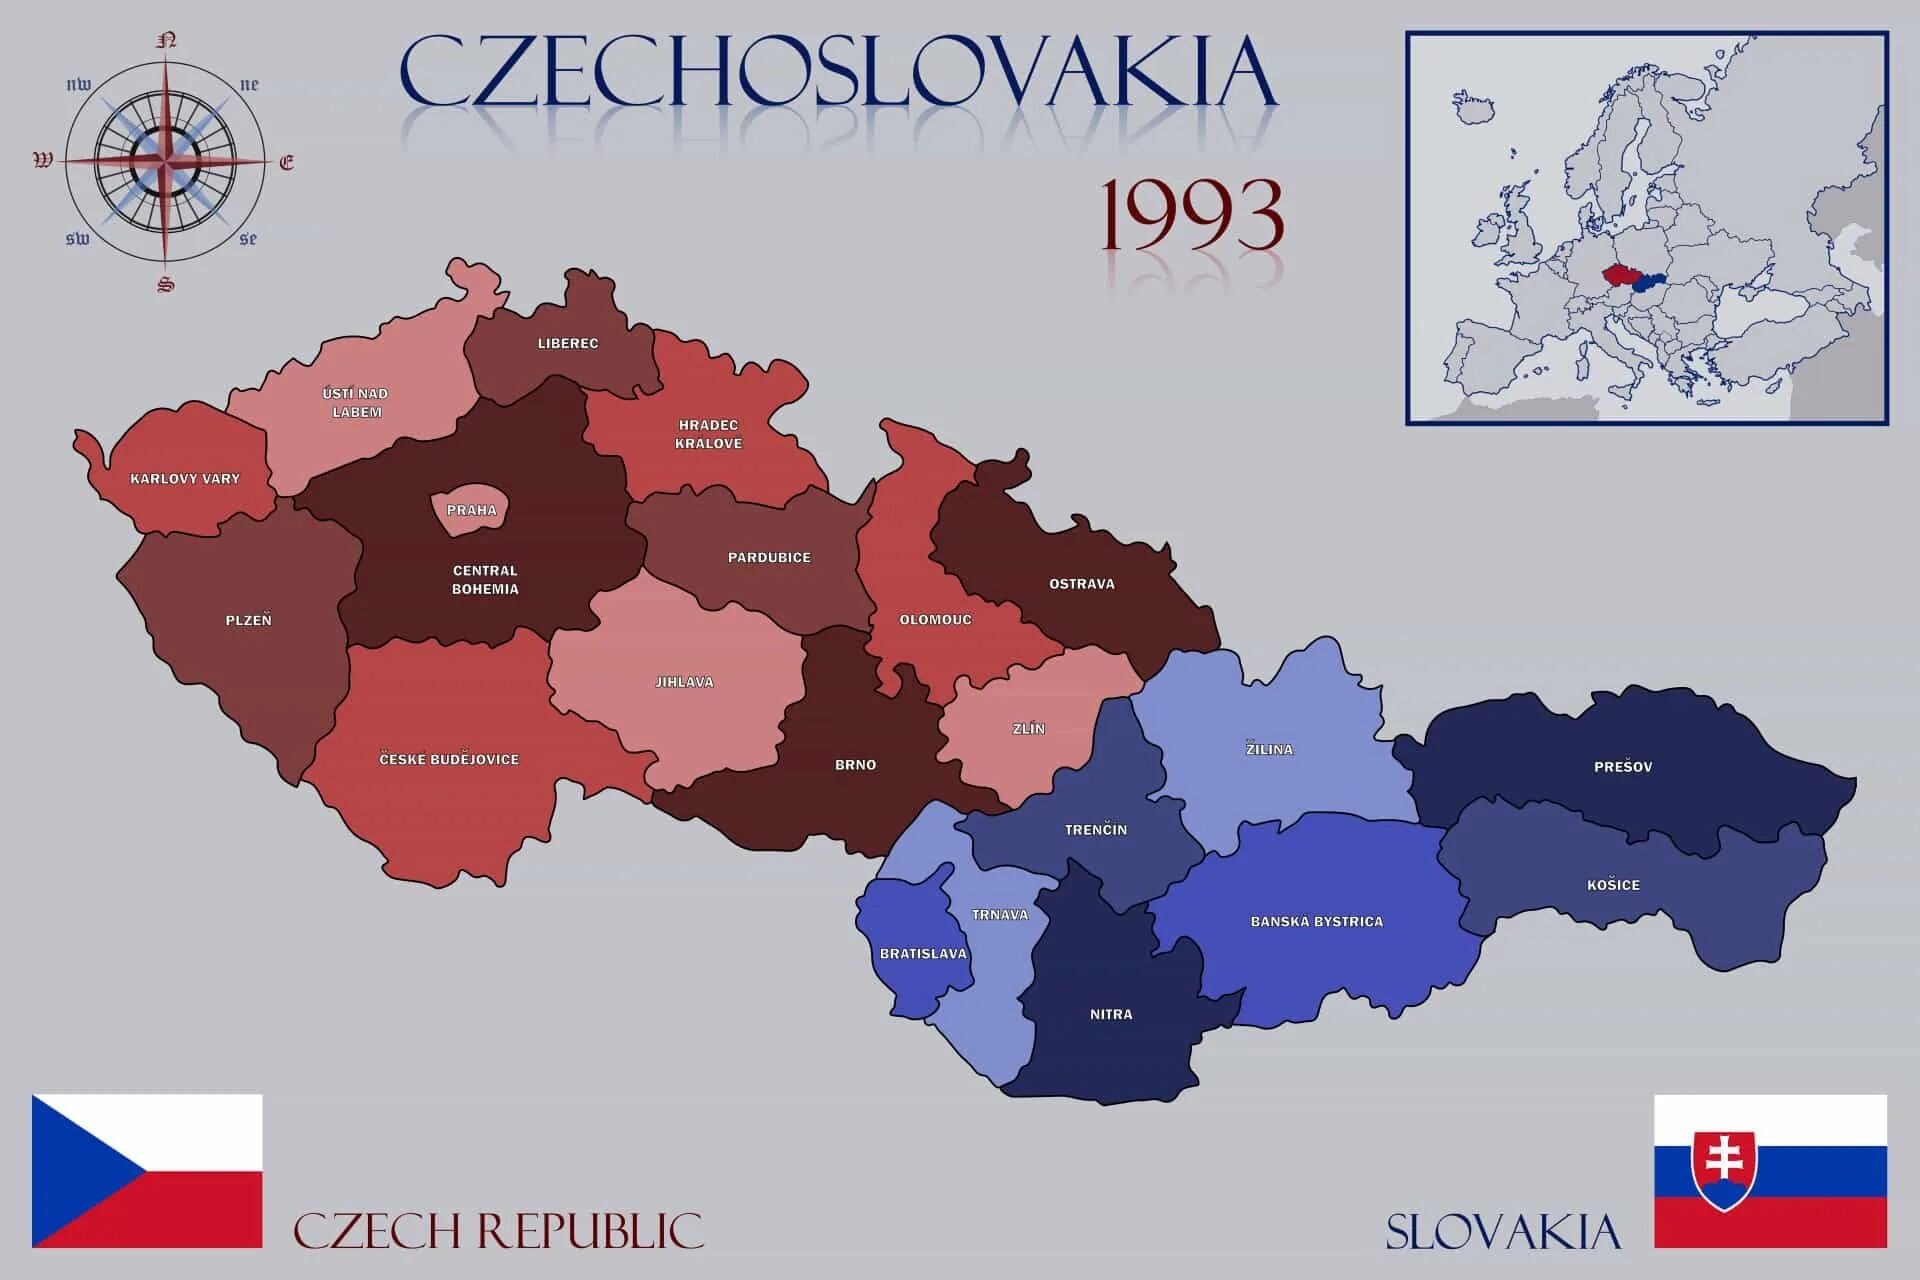 В 1993 году Чехословакия разделилась на Чехию и Словакию. Распад Чехословакии карта. Разделение Чехословакии на Чехию и Словакию. 1993 Г. распад Чехословакии на Чехию и Словакию.